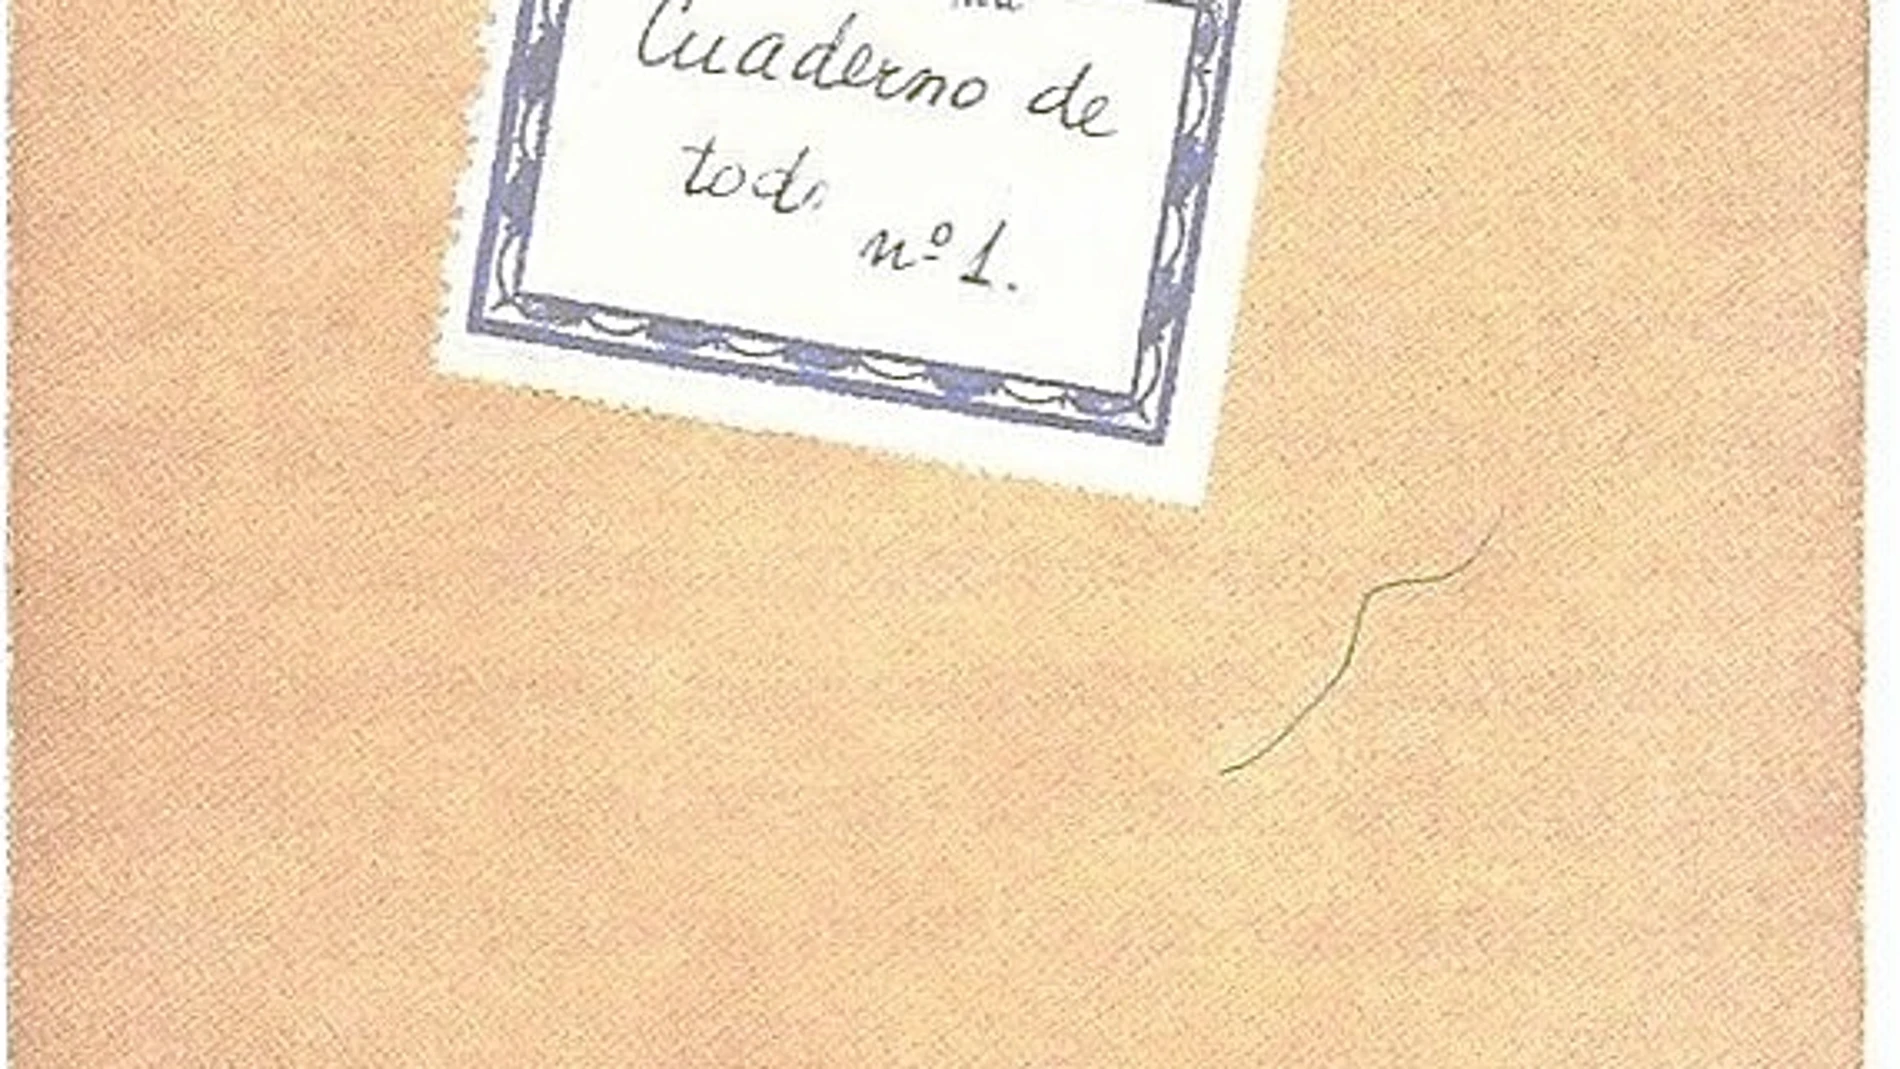 Portada de uno de los cuadernos que la escritora Carmen Martín Gaite utilizó para sus apuntes diarísticos